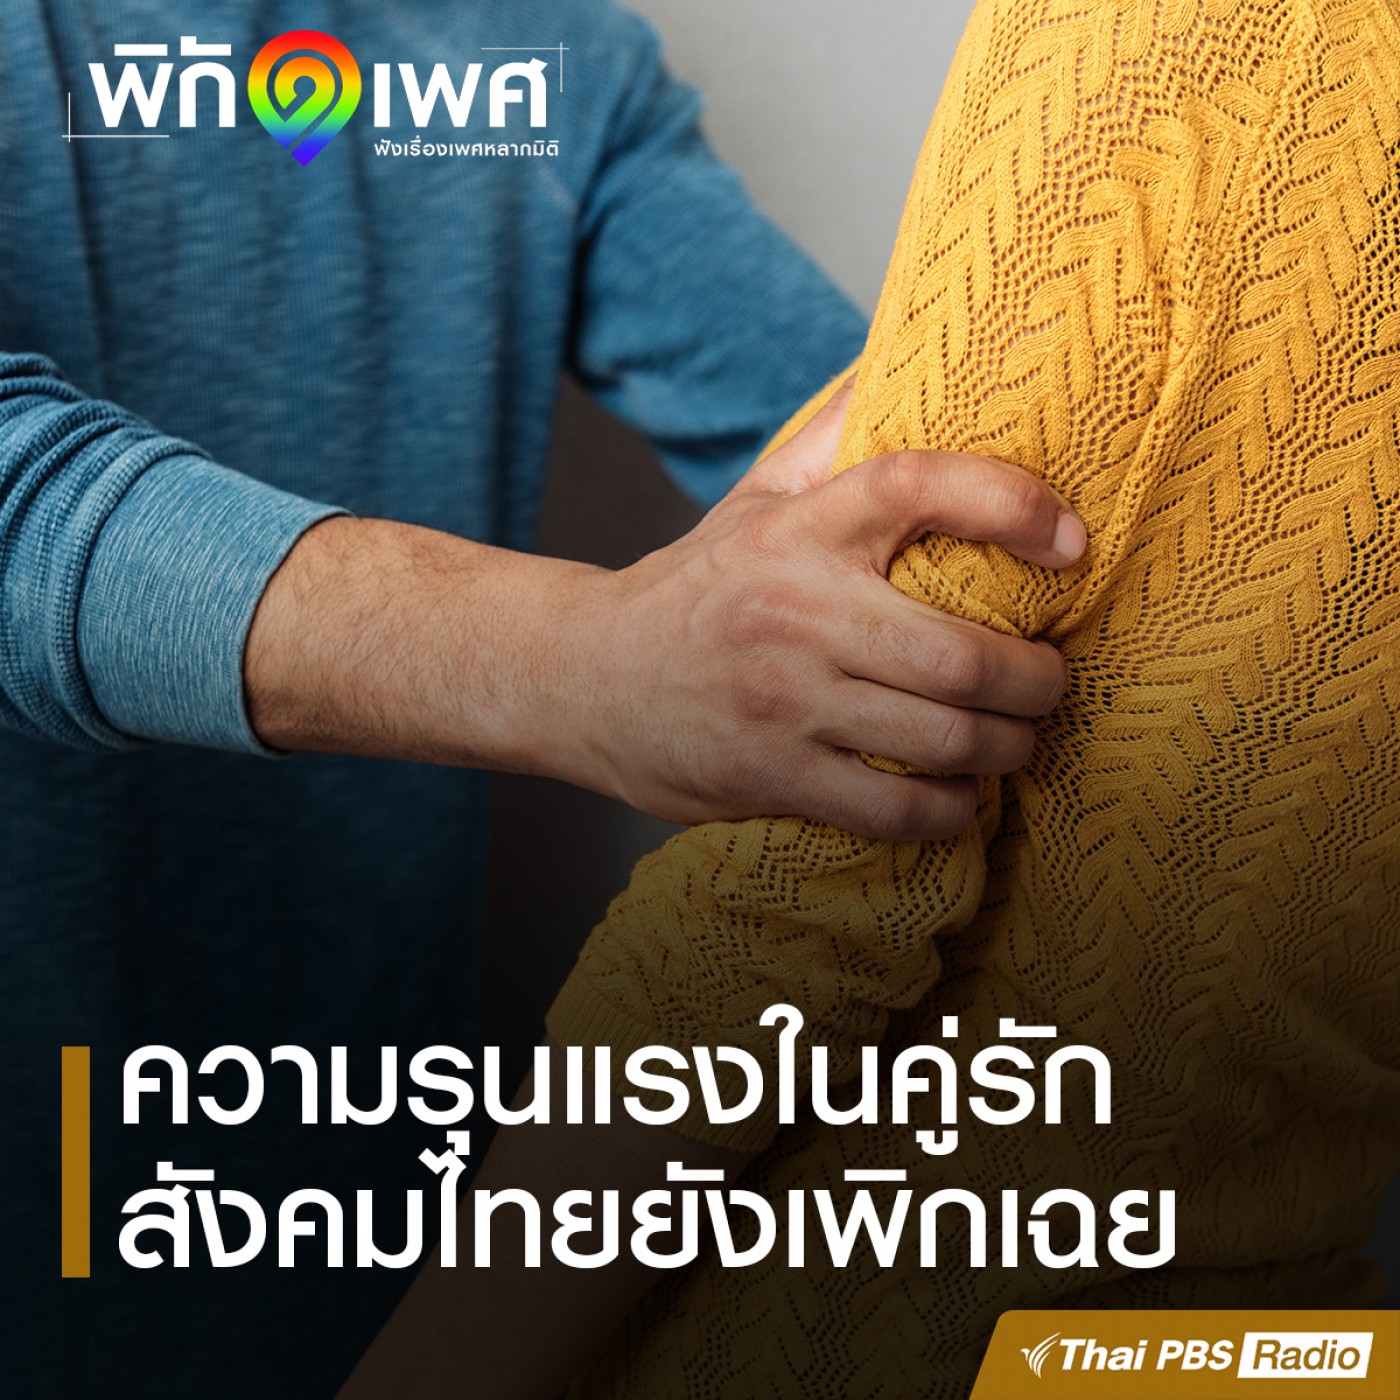 พิกัดเพศ : “ความรุนแรงในคู่รัก” สังคมไทยยังเพิกเฉย